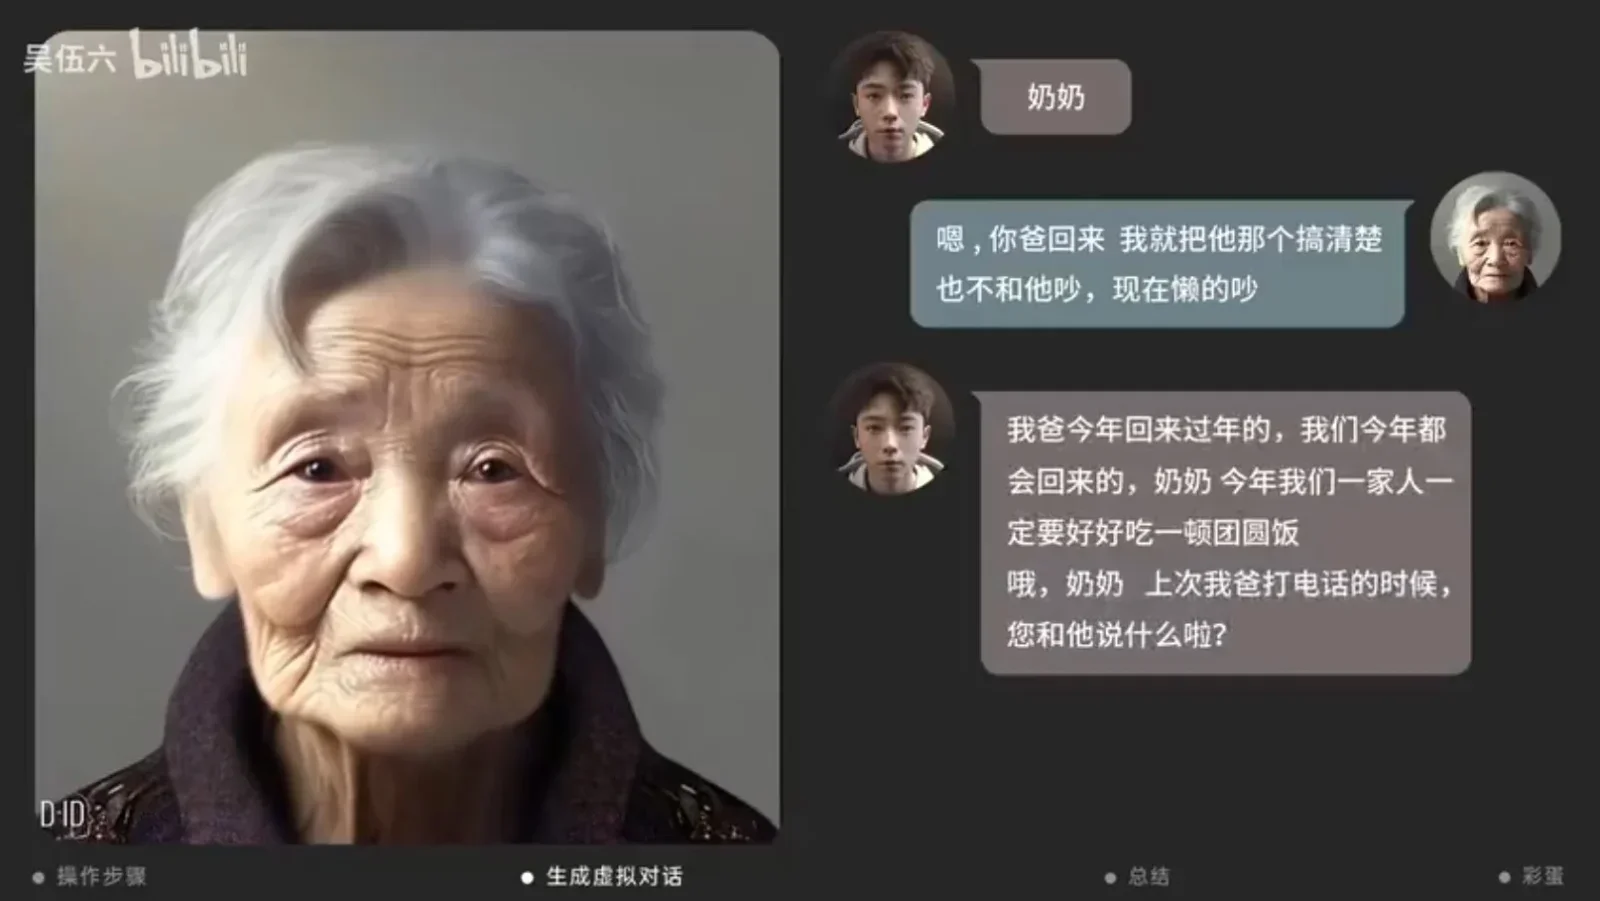 จีนใช้ Ai สร้างภาพผู้ล่วงลับมาคุยกับญาติ